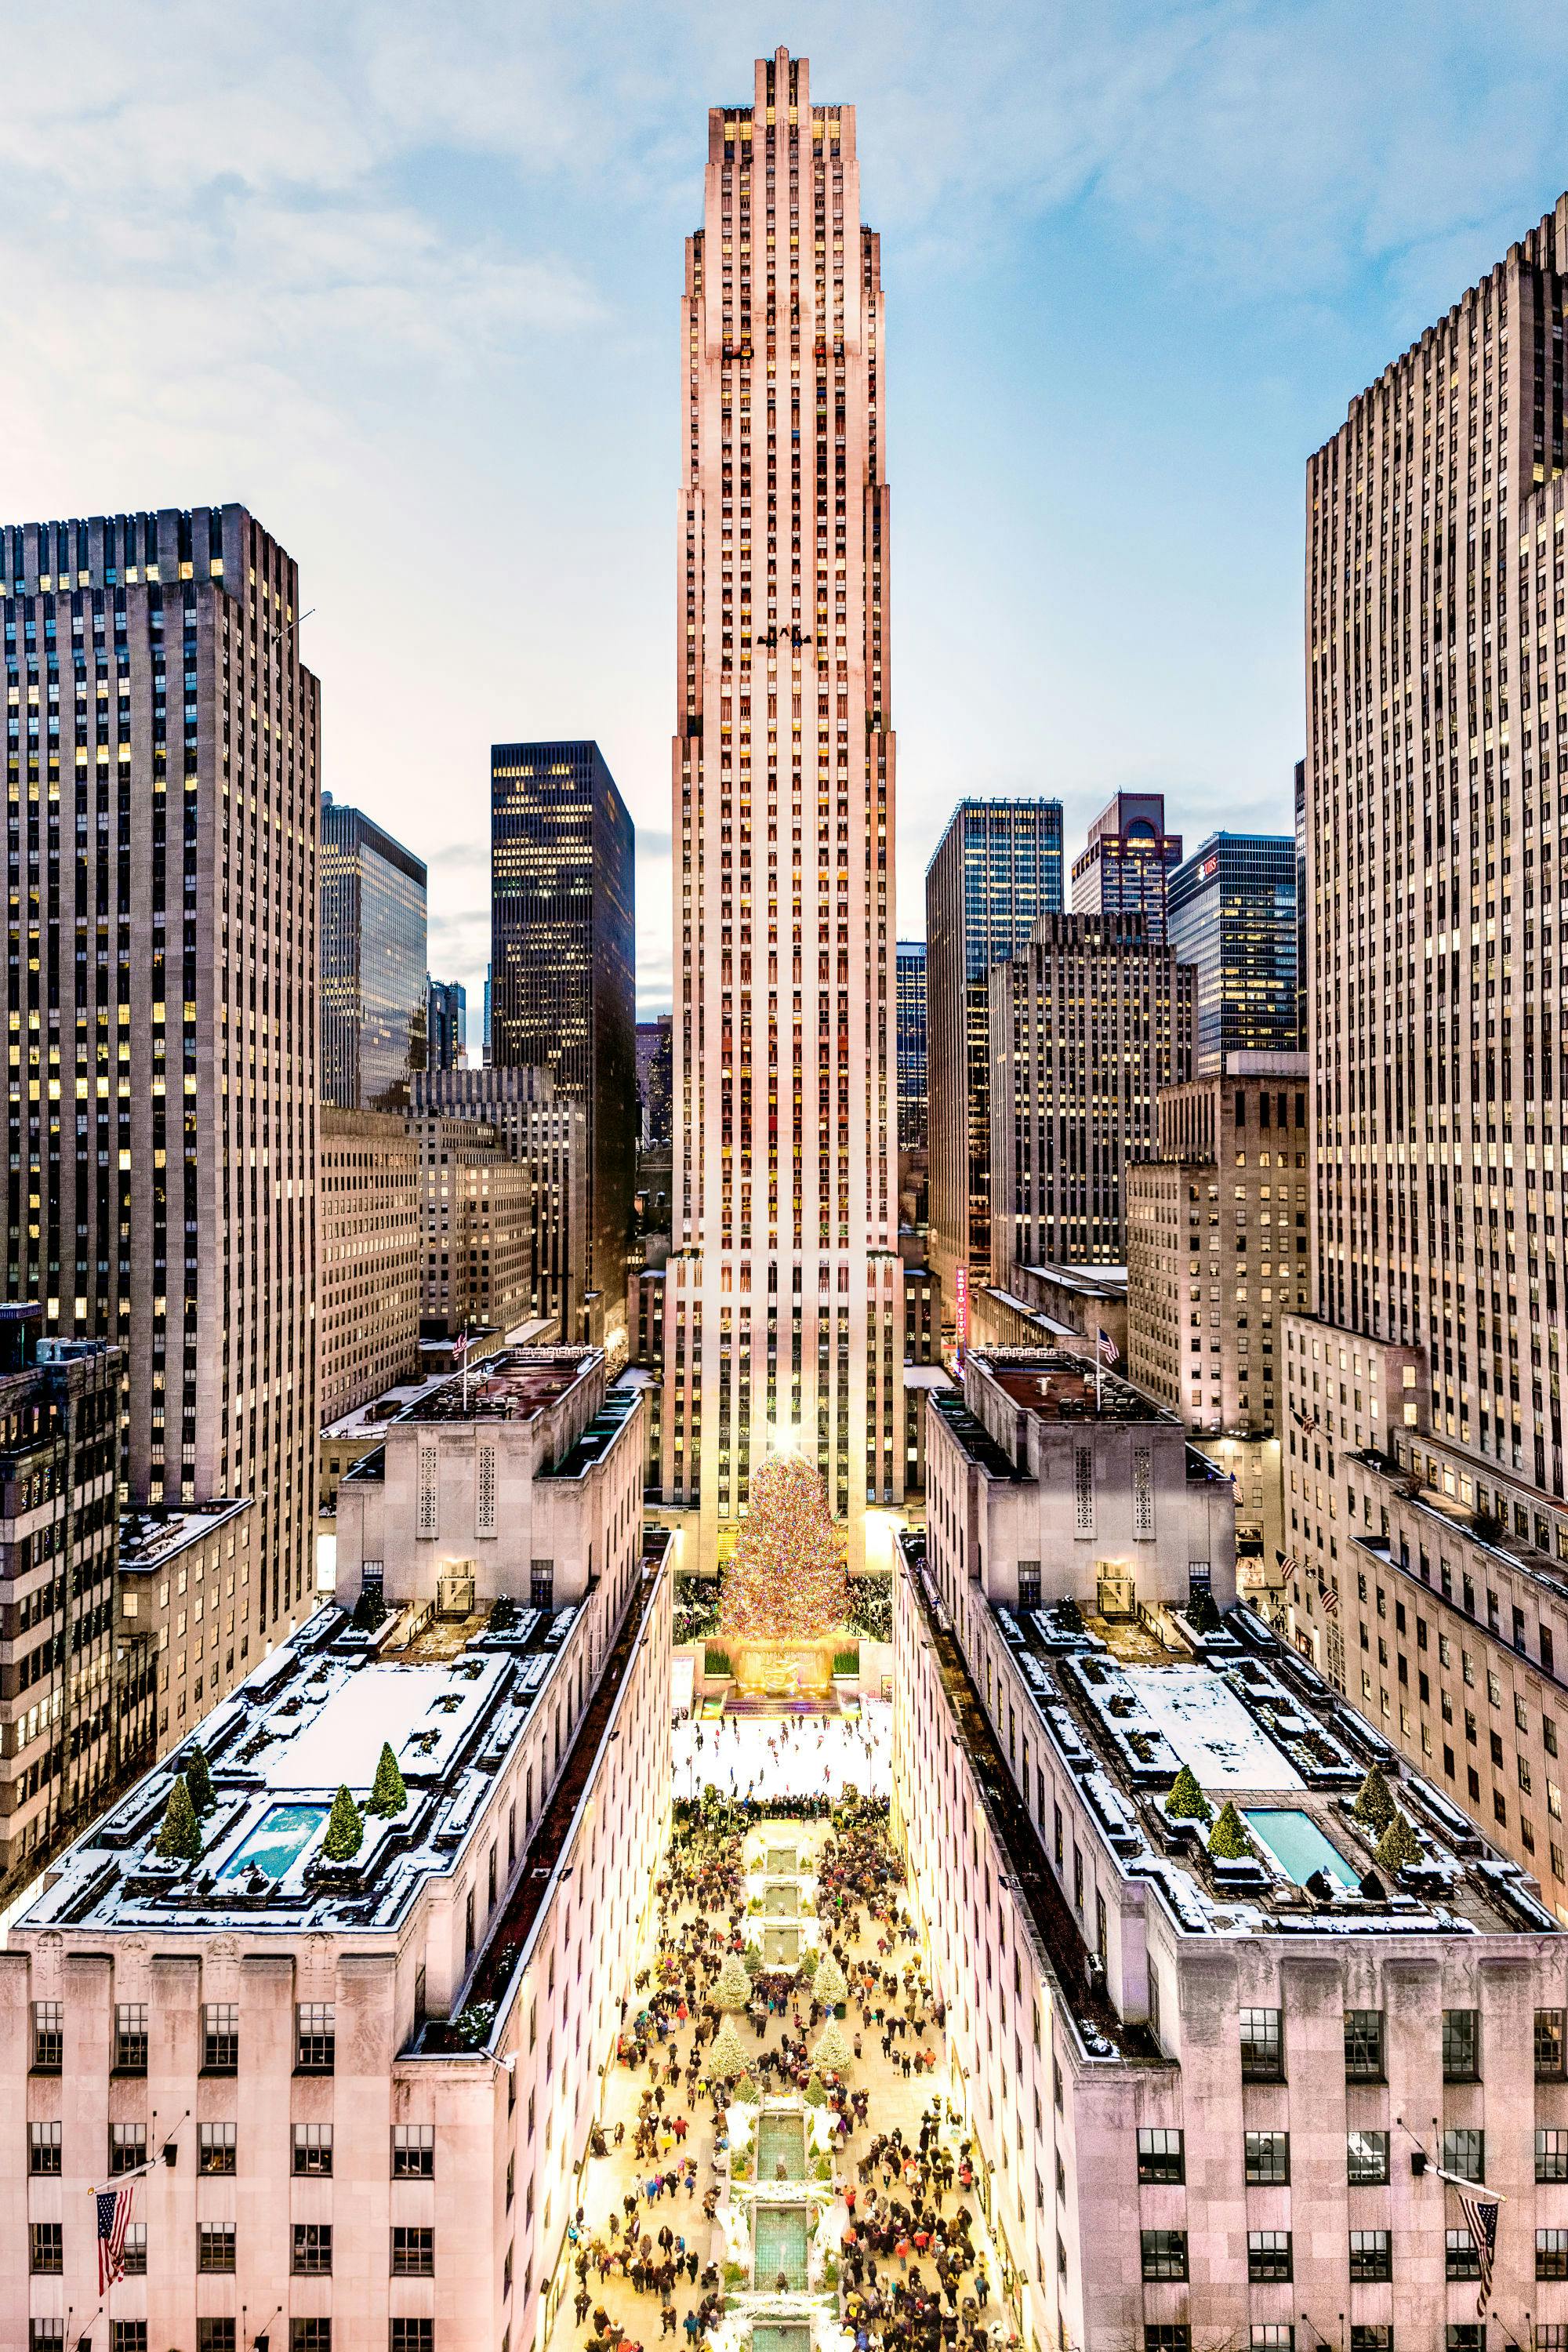 Gray Malin x Rockefeller Center header image